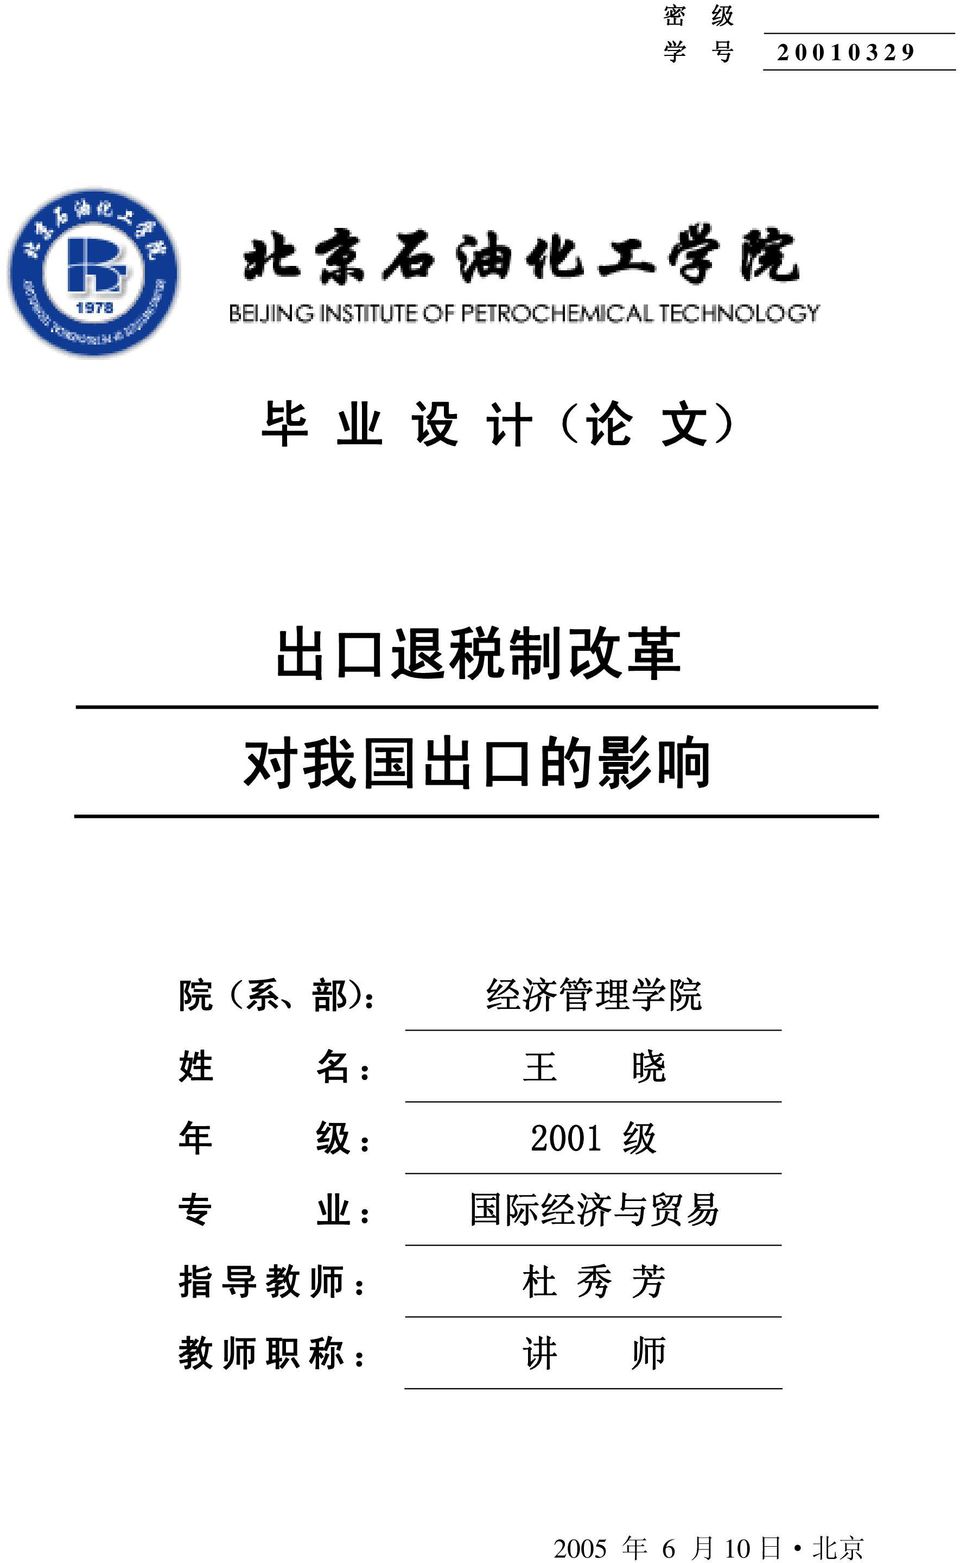 姓 名 : 王 晓 年 级 : 2001 级 专 业 : 国 际 经 济 与 贸 易 指 导